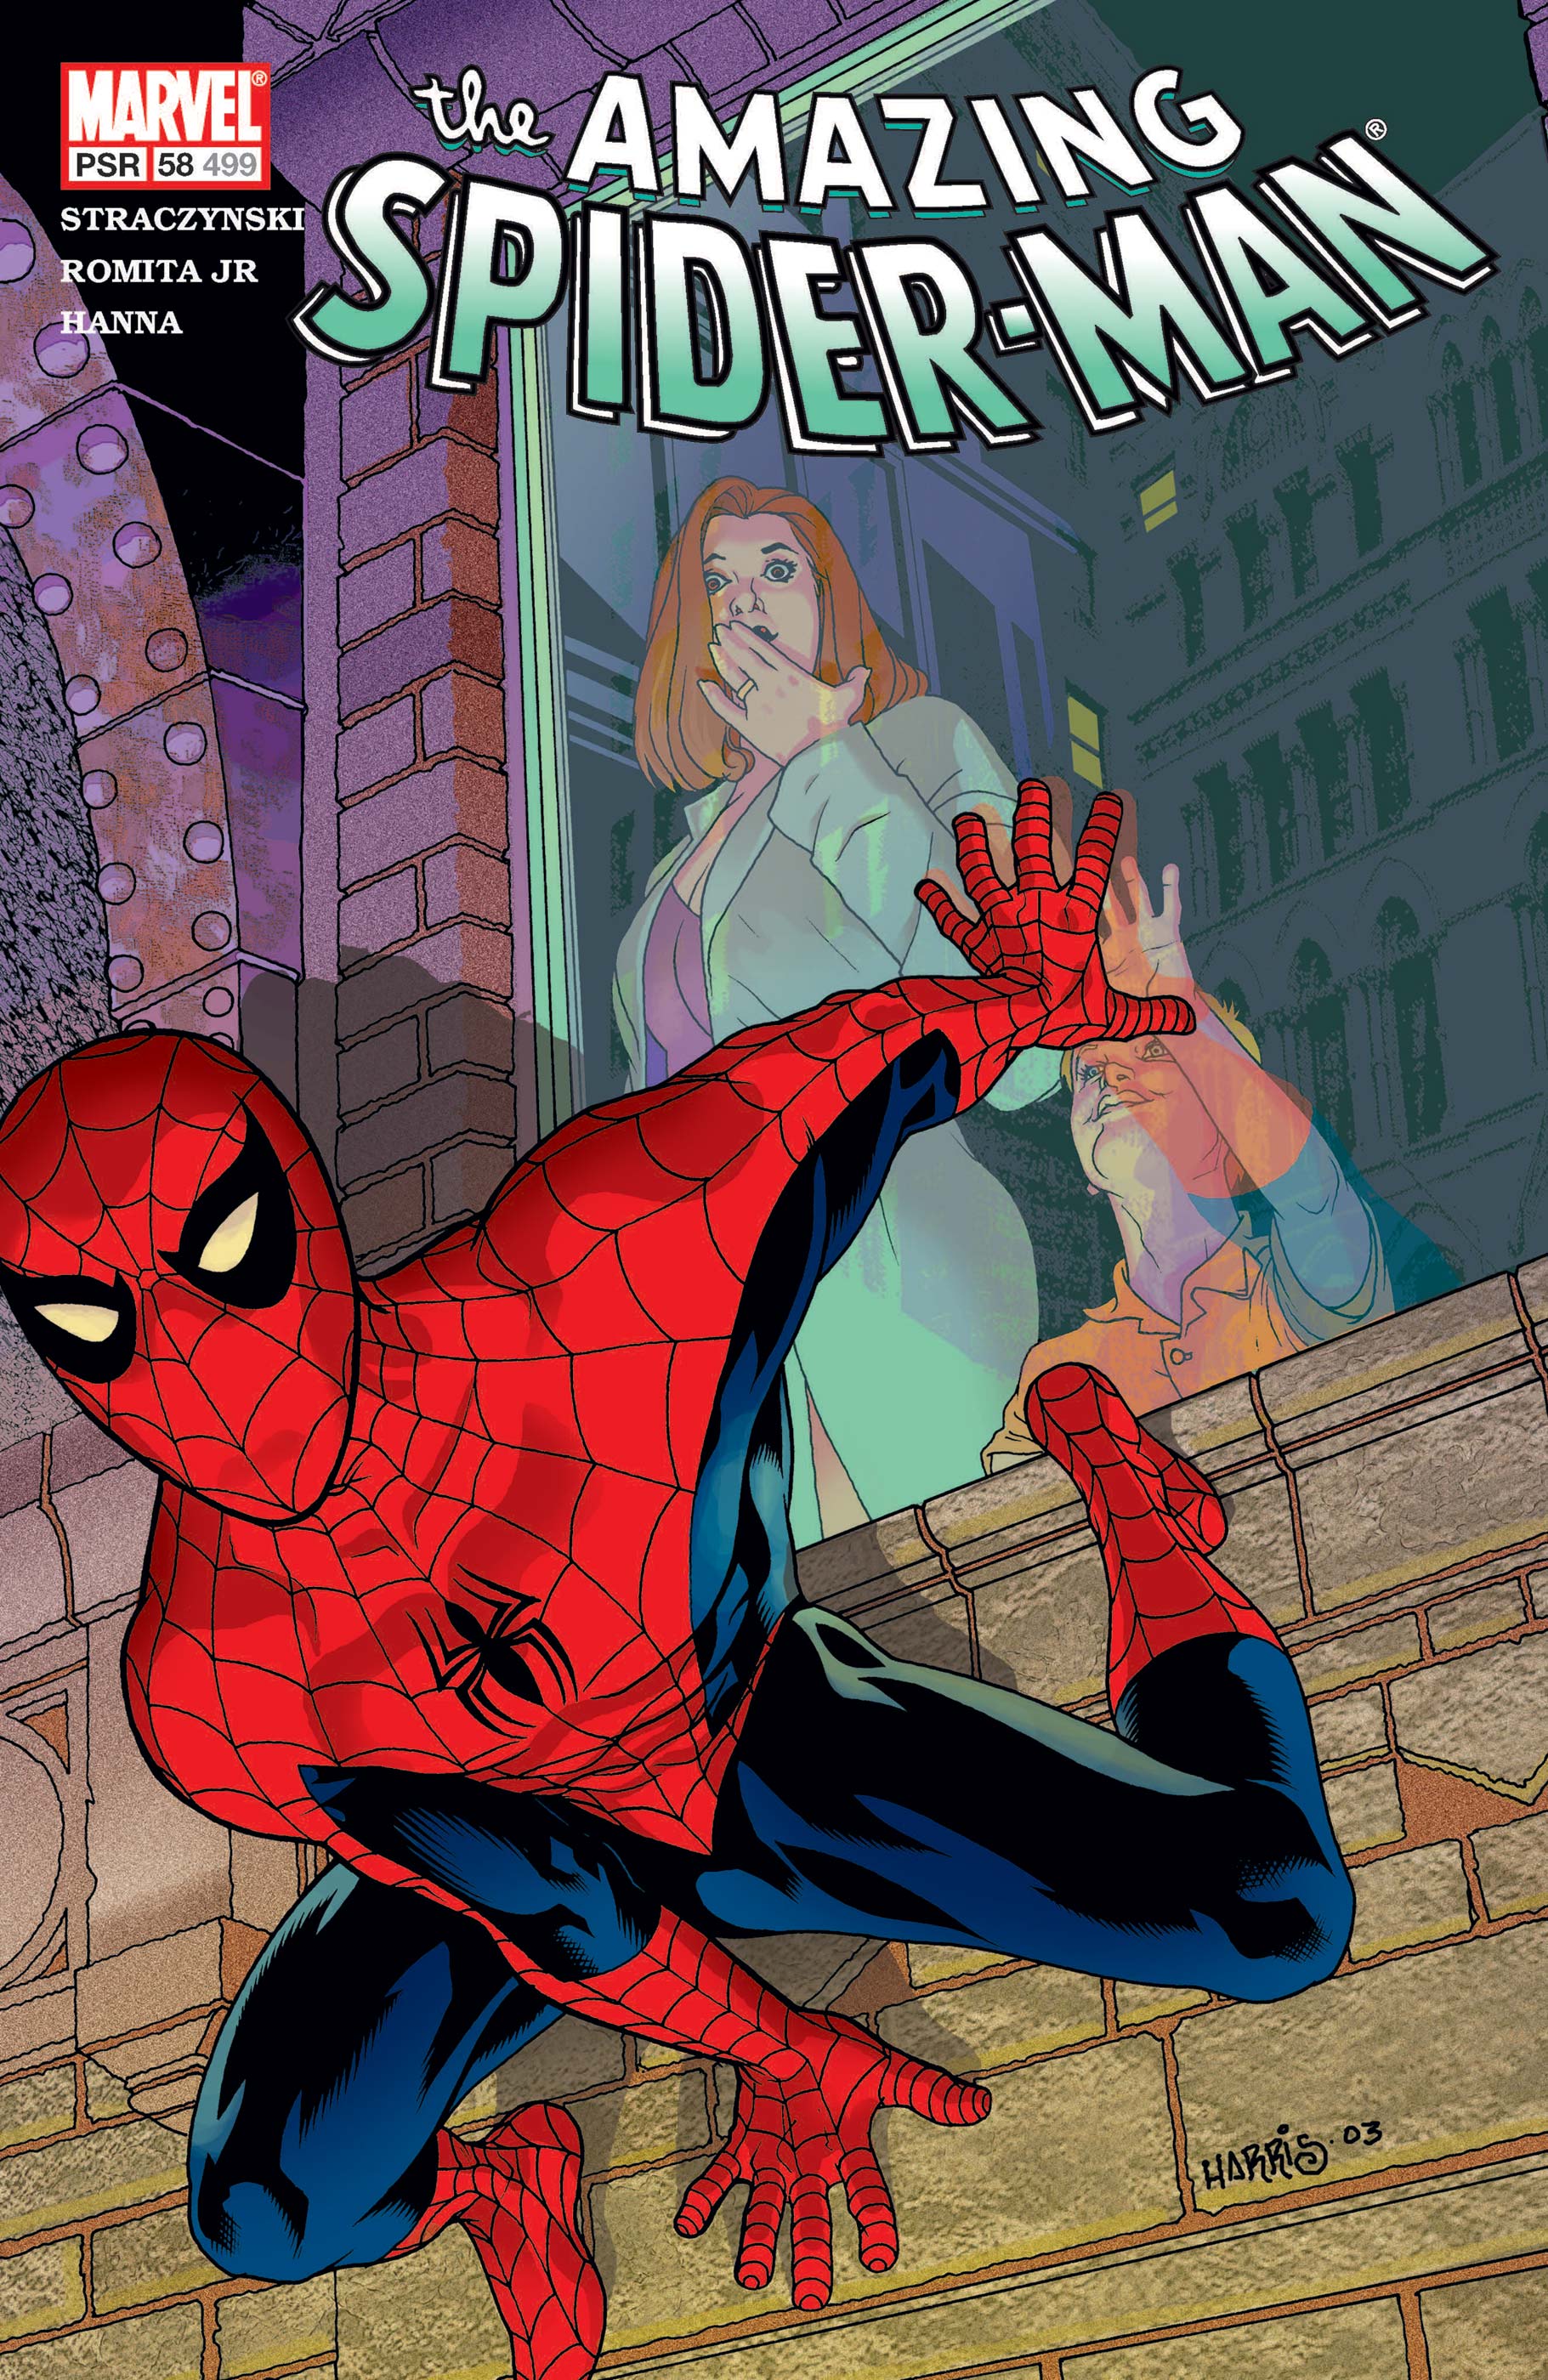 Amazing spider-man #58